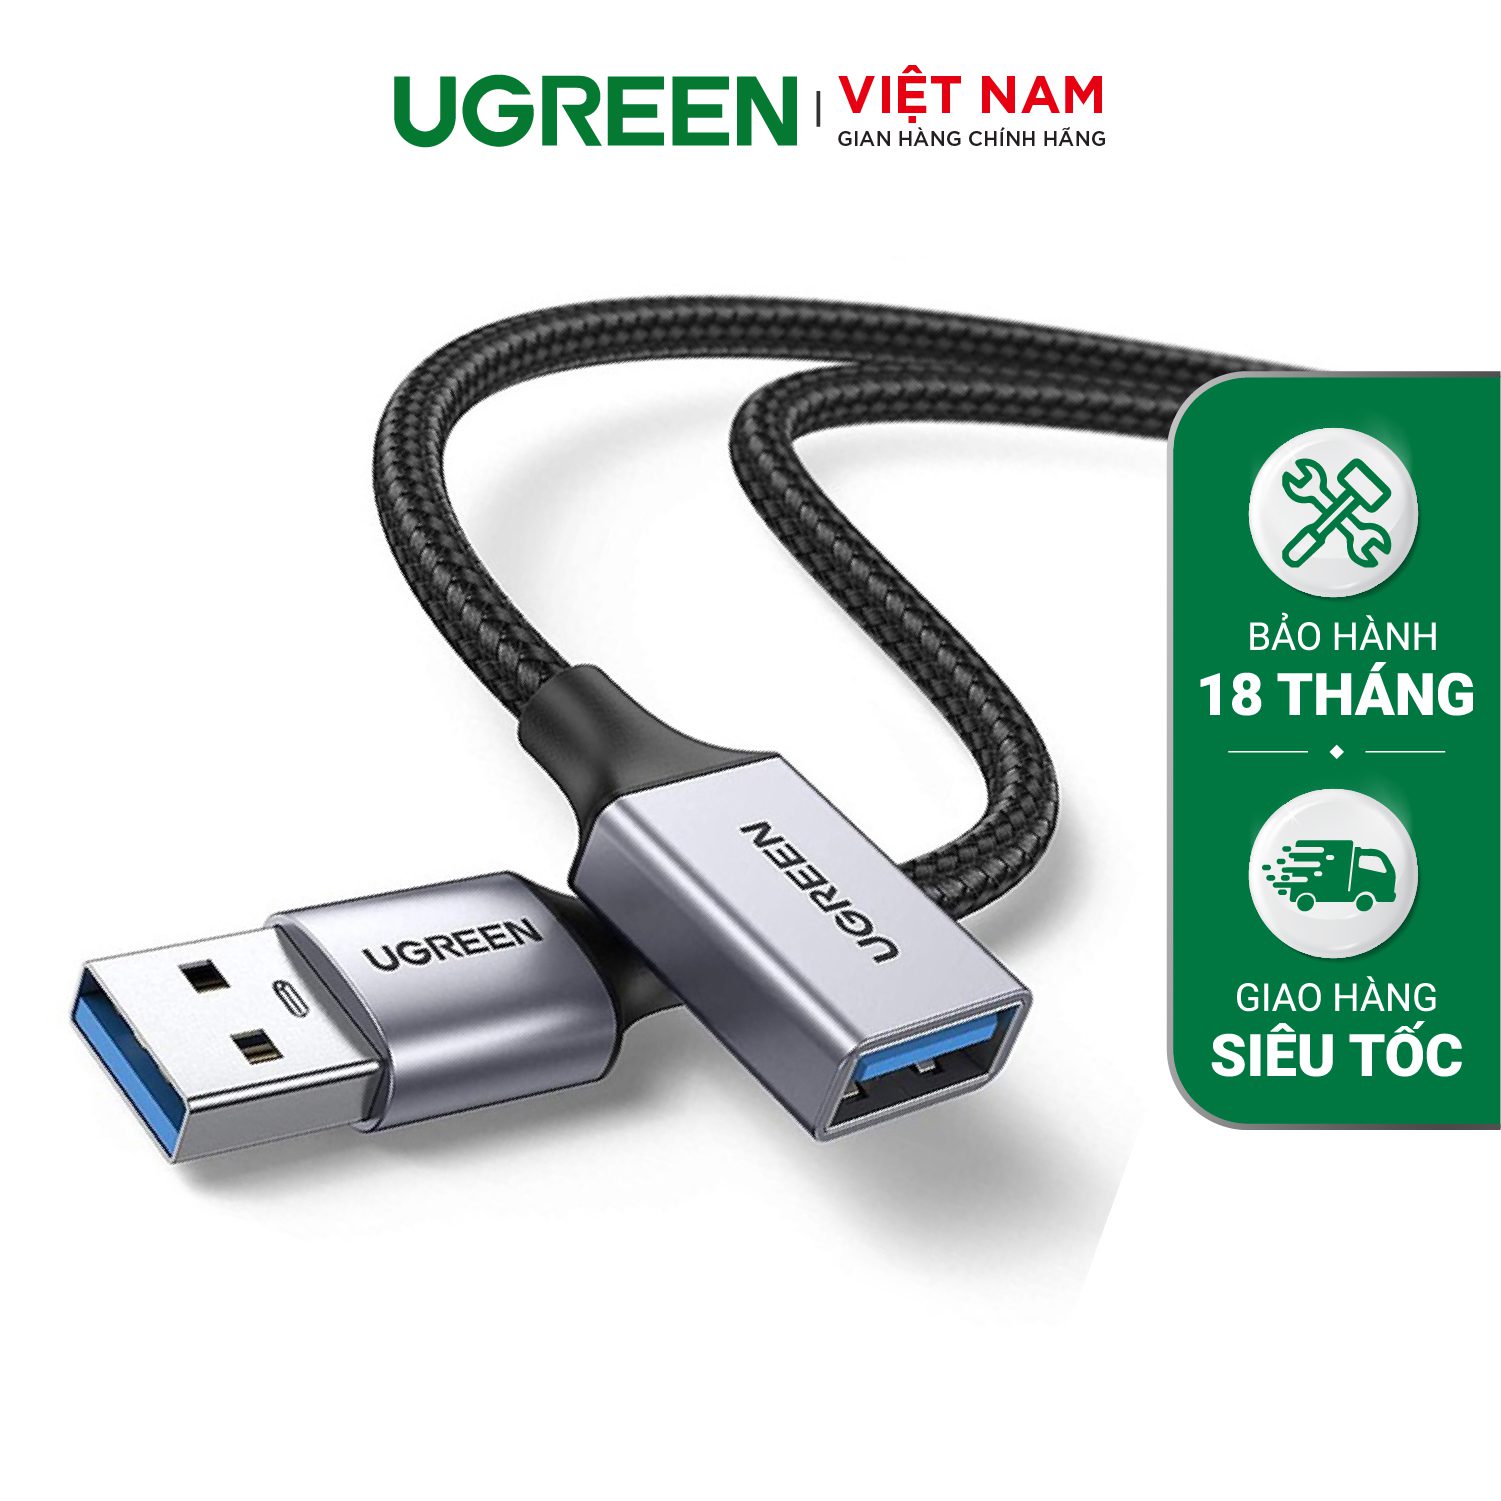 Cáp nối dài USB 3.0 UGREEN US115 - Tốc độ truyền 5Gbps - Dây bện nylon chắc chắn độ dài từ 0.5-2m - Hãng phân phối chính hãng - Bảo hành 18 tháng – Ugreen Việt Nam